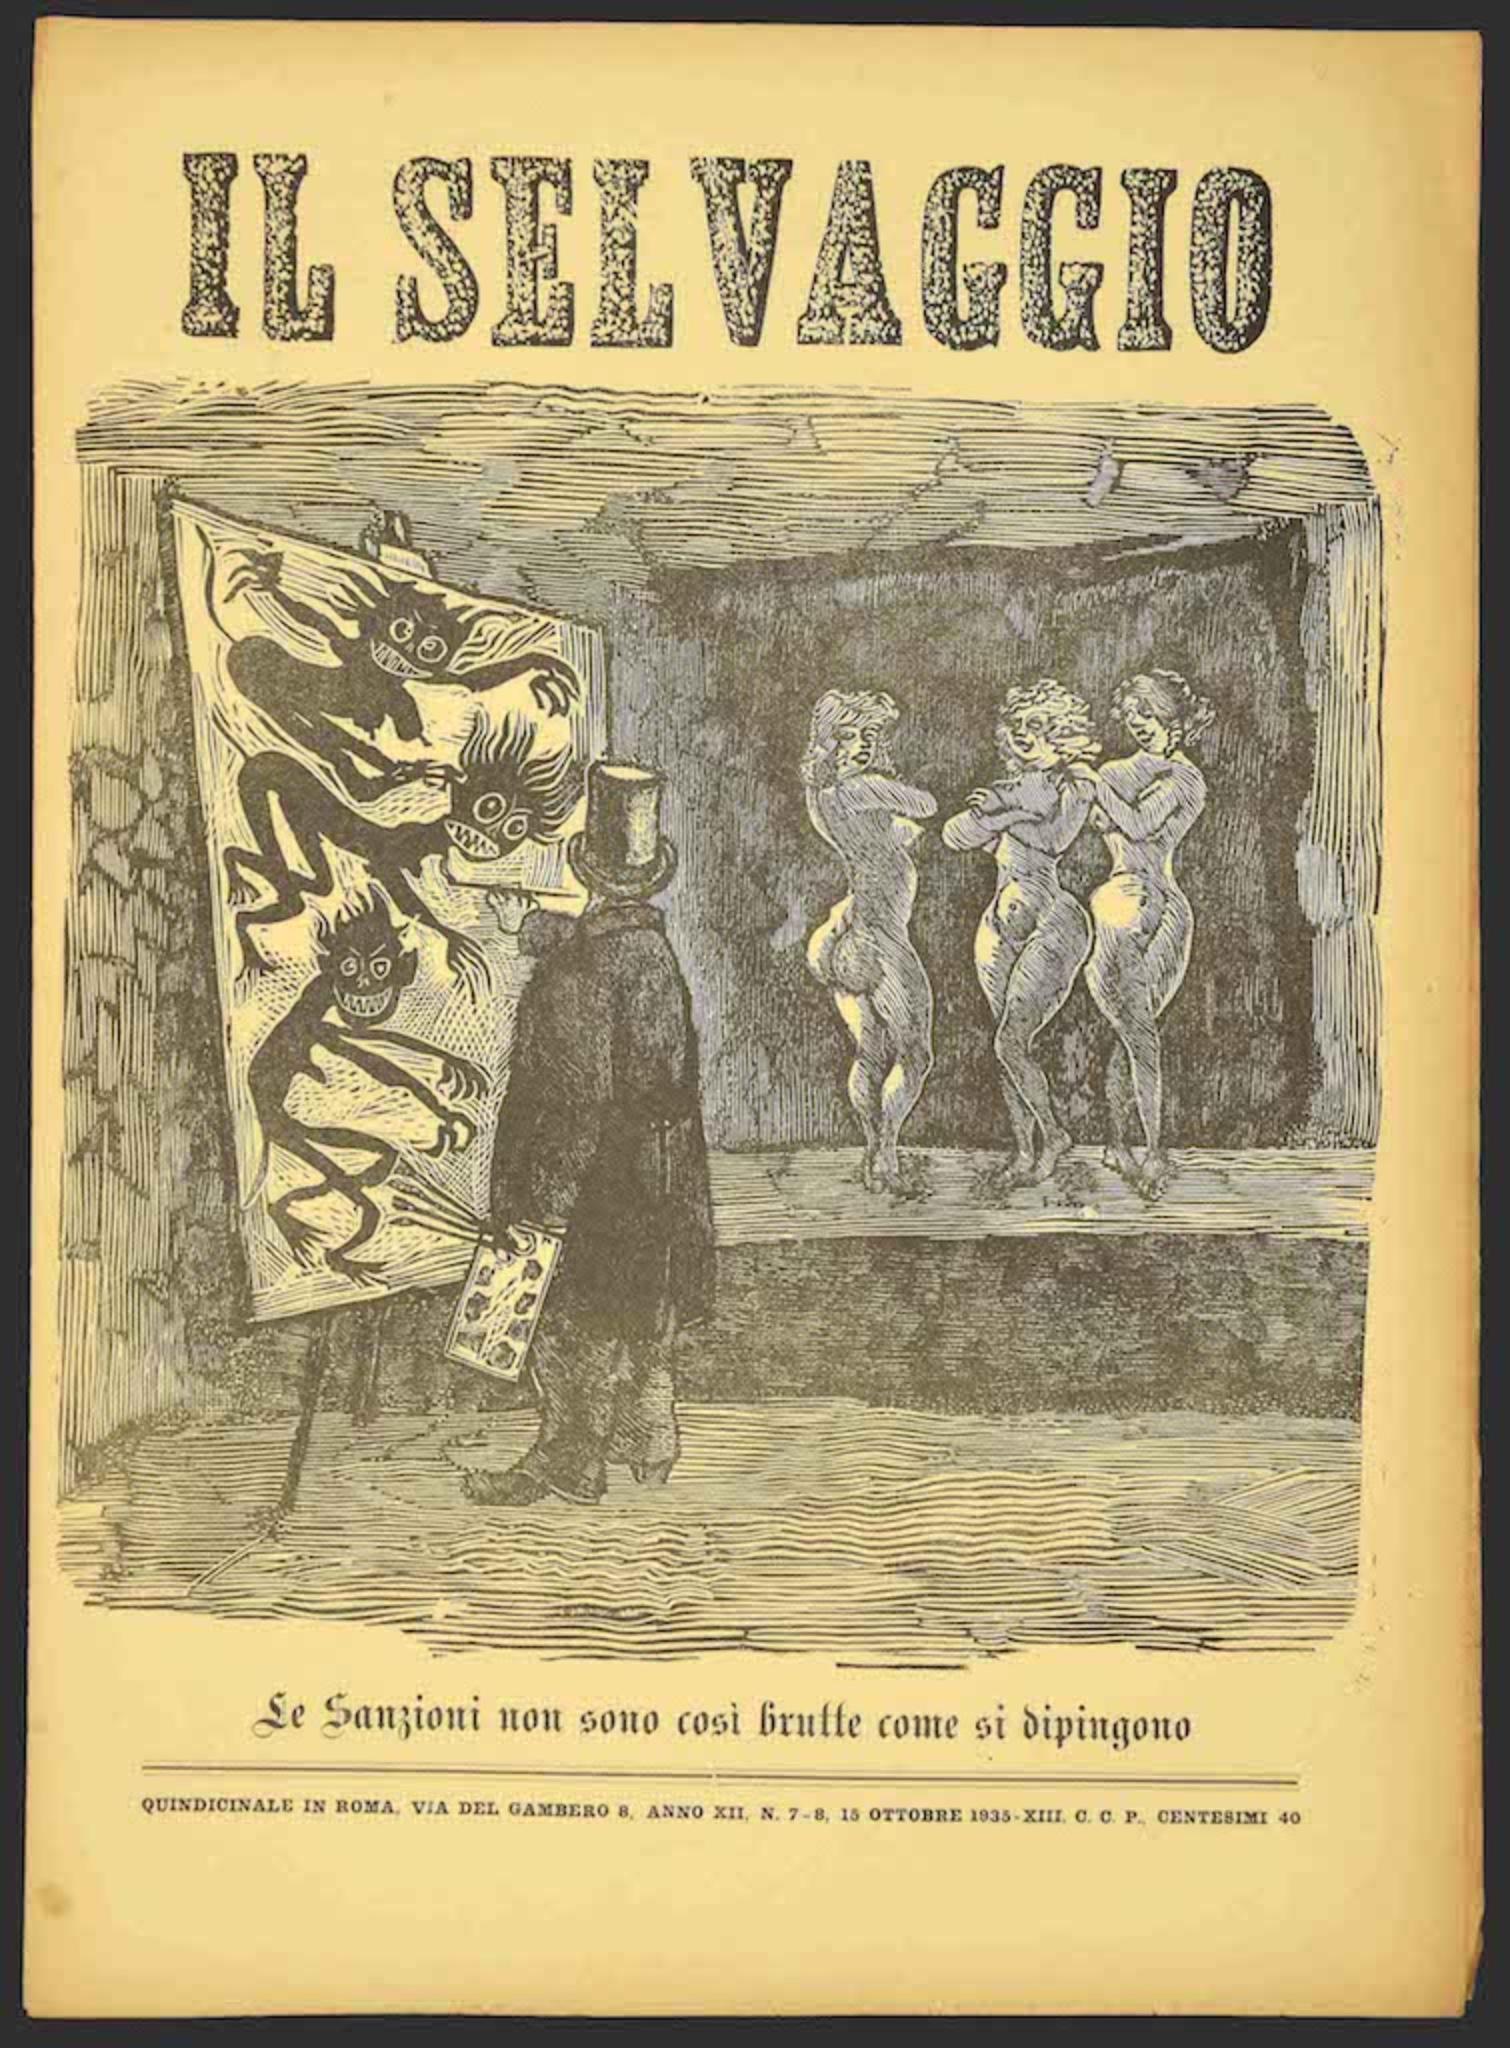 Il Selvaggio no.7/8 by Mino Maccari - 1935